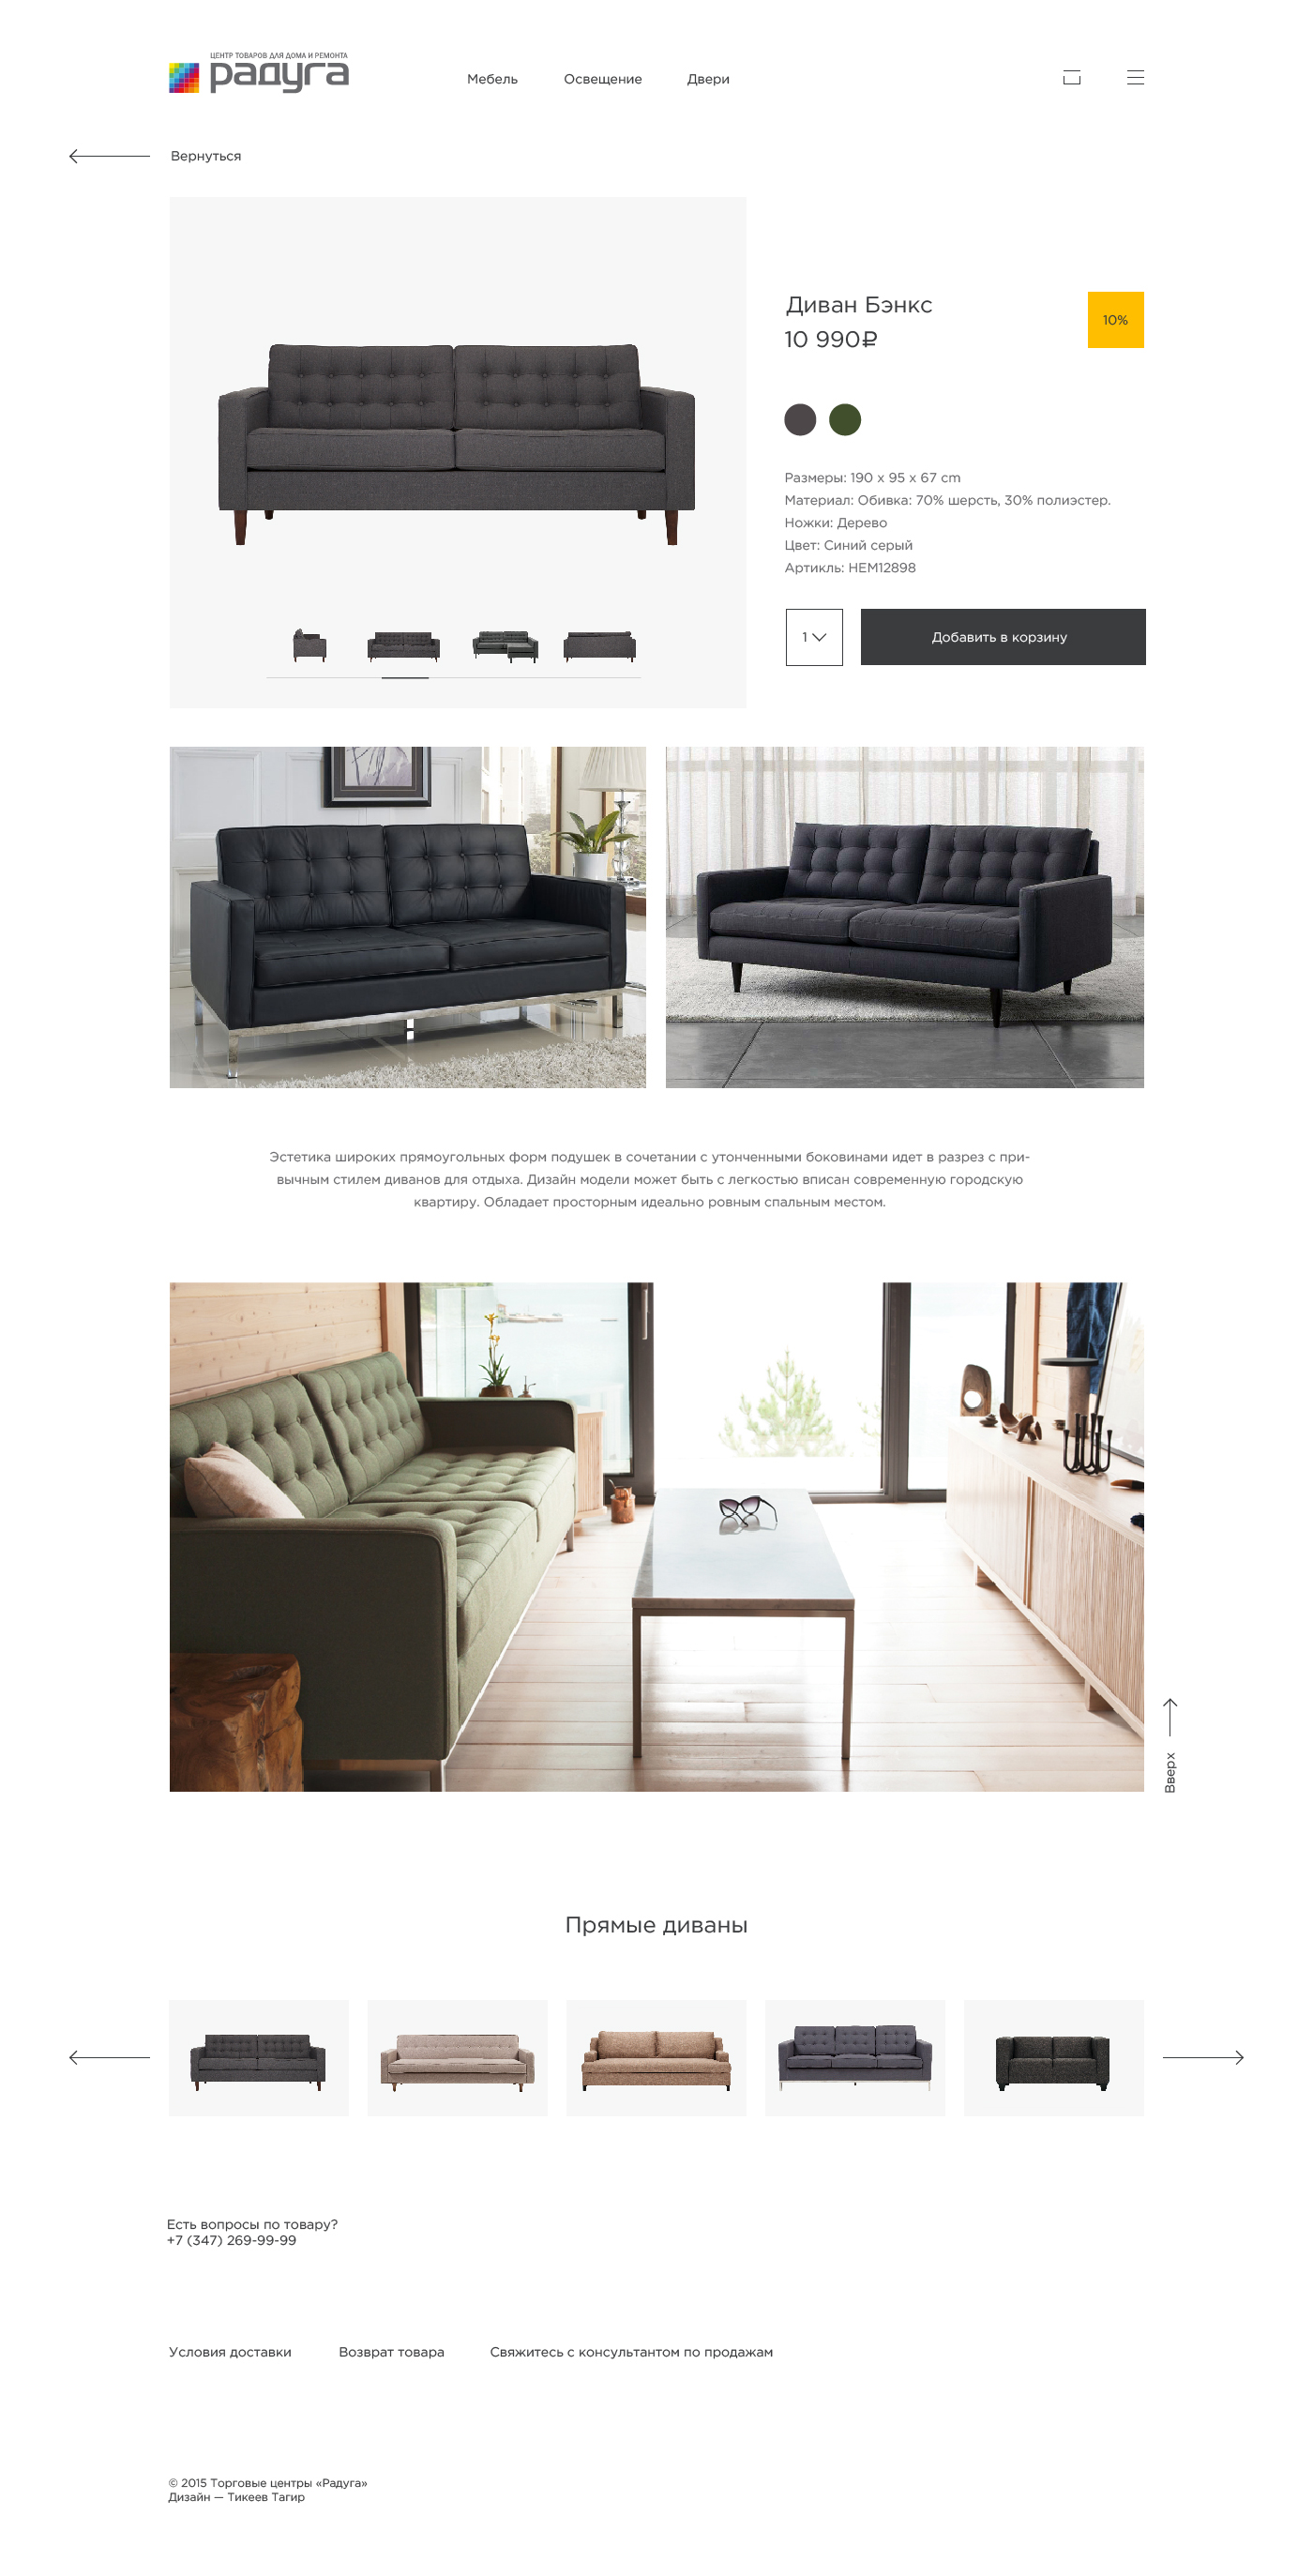 furniture shop Web site